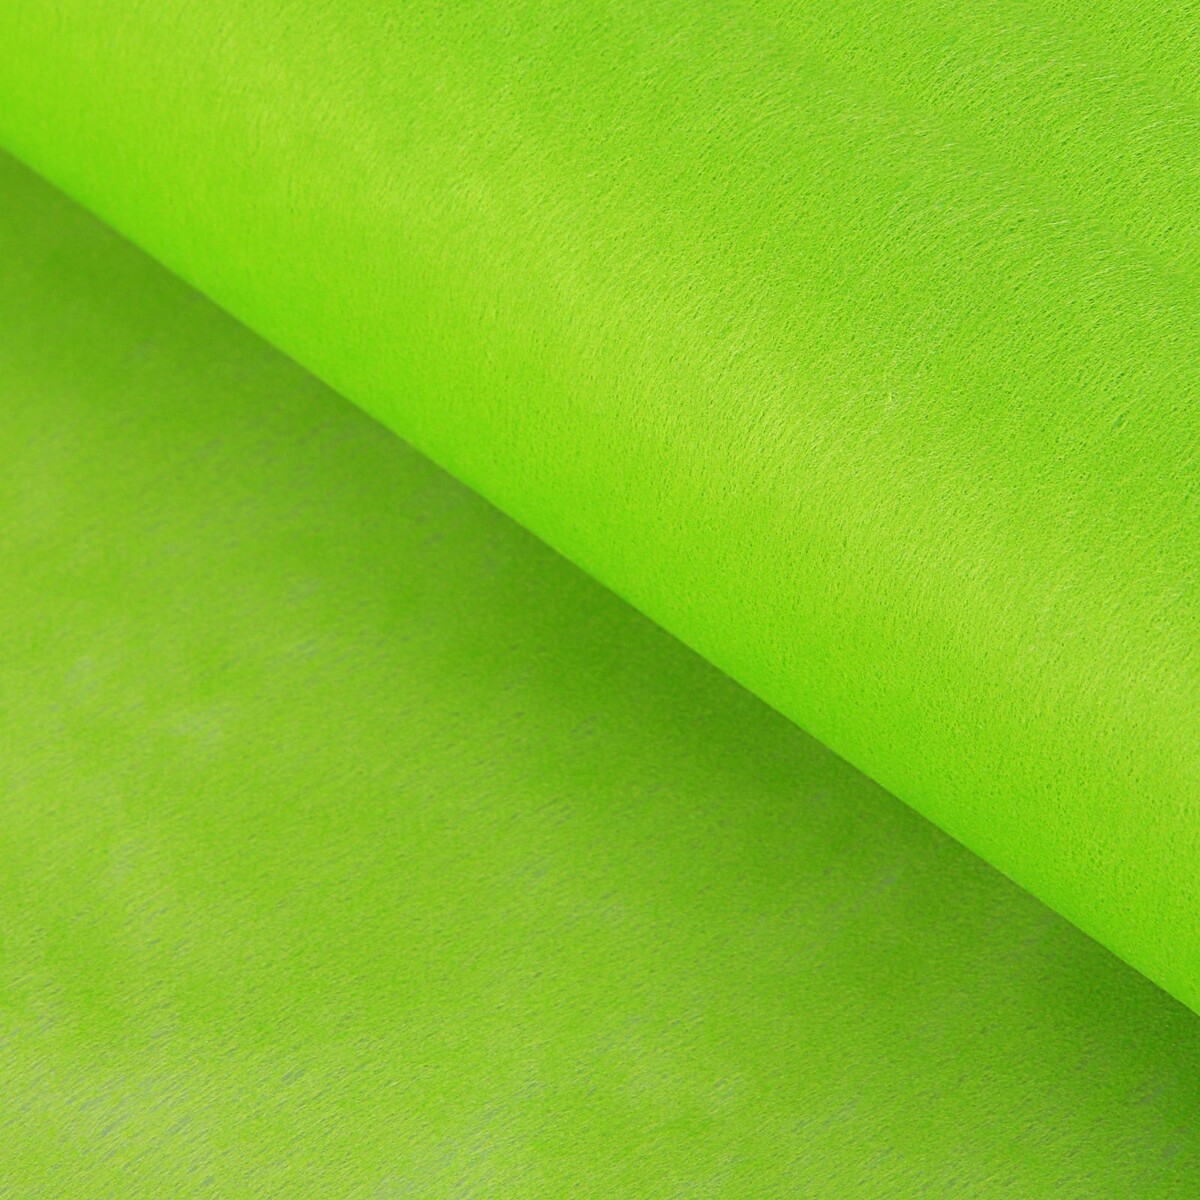 Фетр для упаковок и поделок, однотонный, салатовый, зеленый, двусторонний, рулон 1шт., 0,5 x 20 м фетр для упаковок и поделок однотонный оливковый двусторонний зеленый рулон 1шт 50 см x 15 м